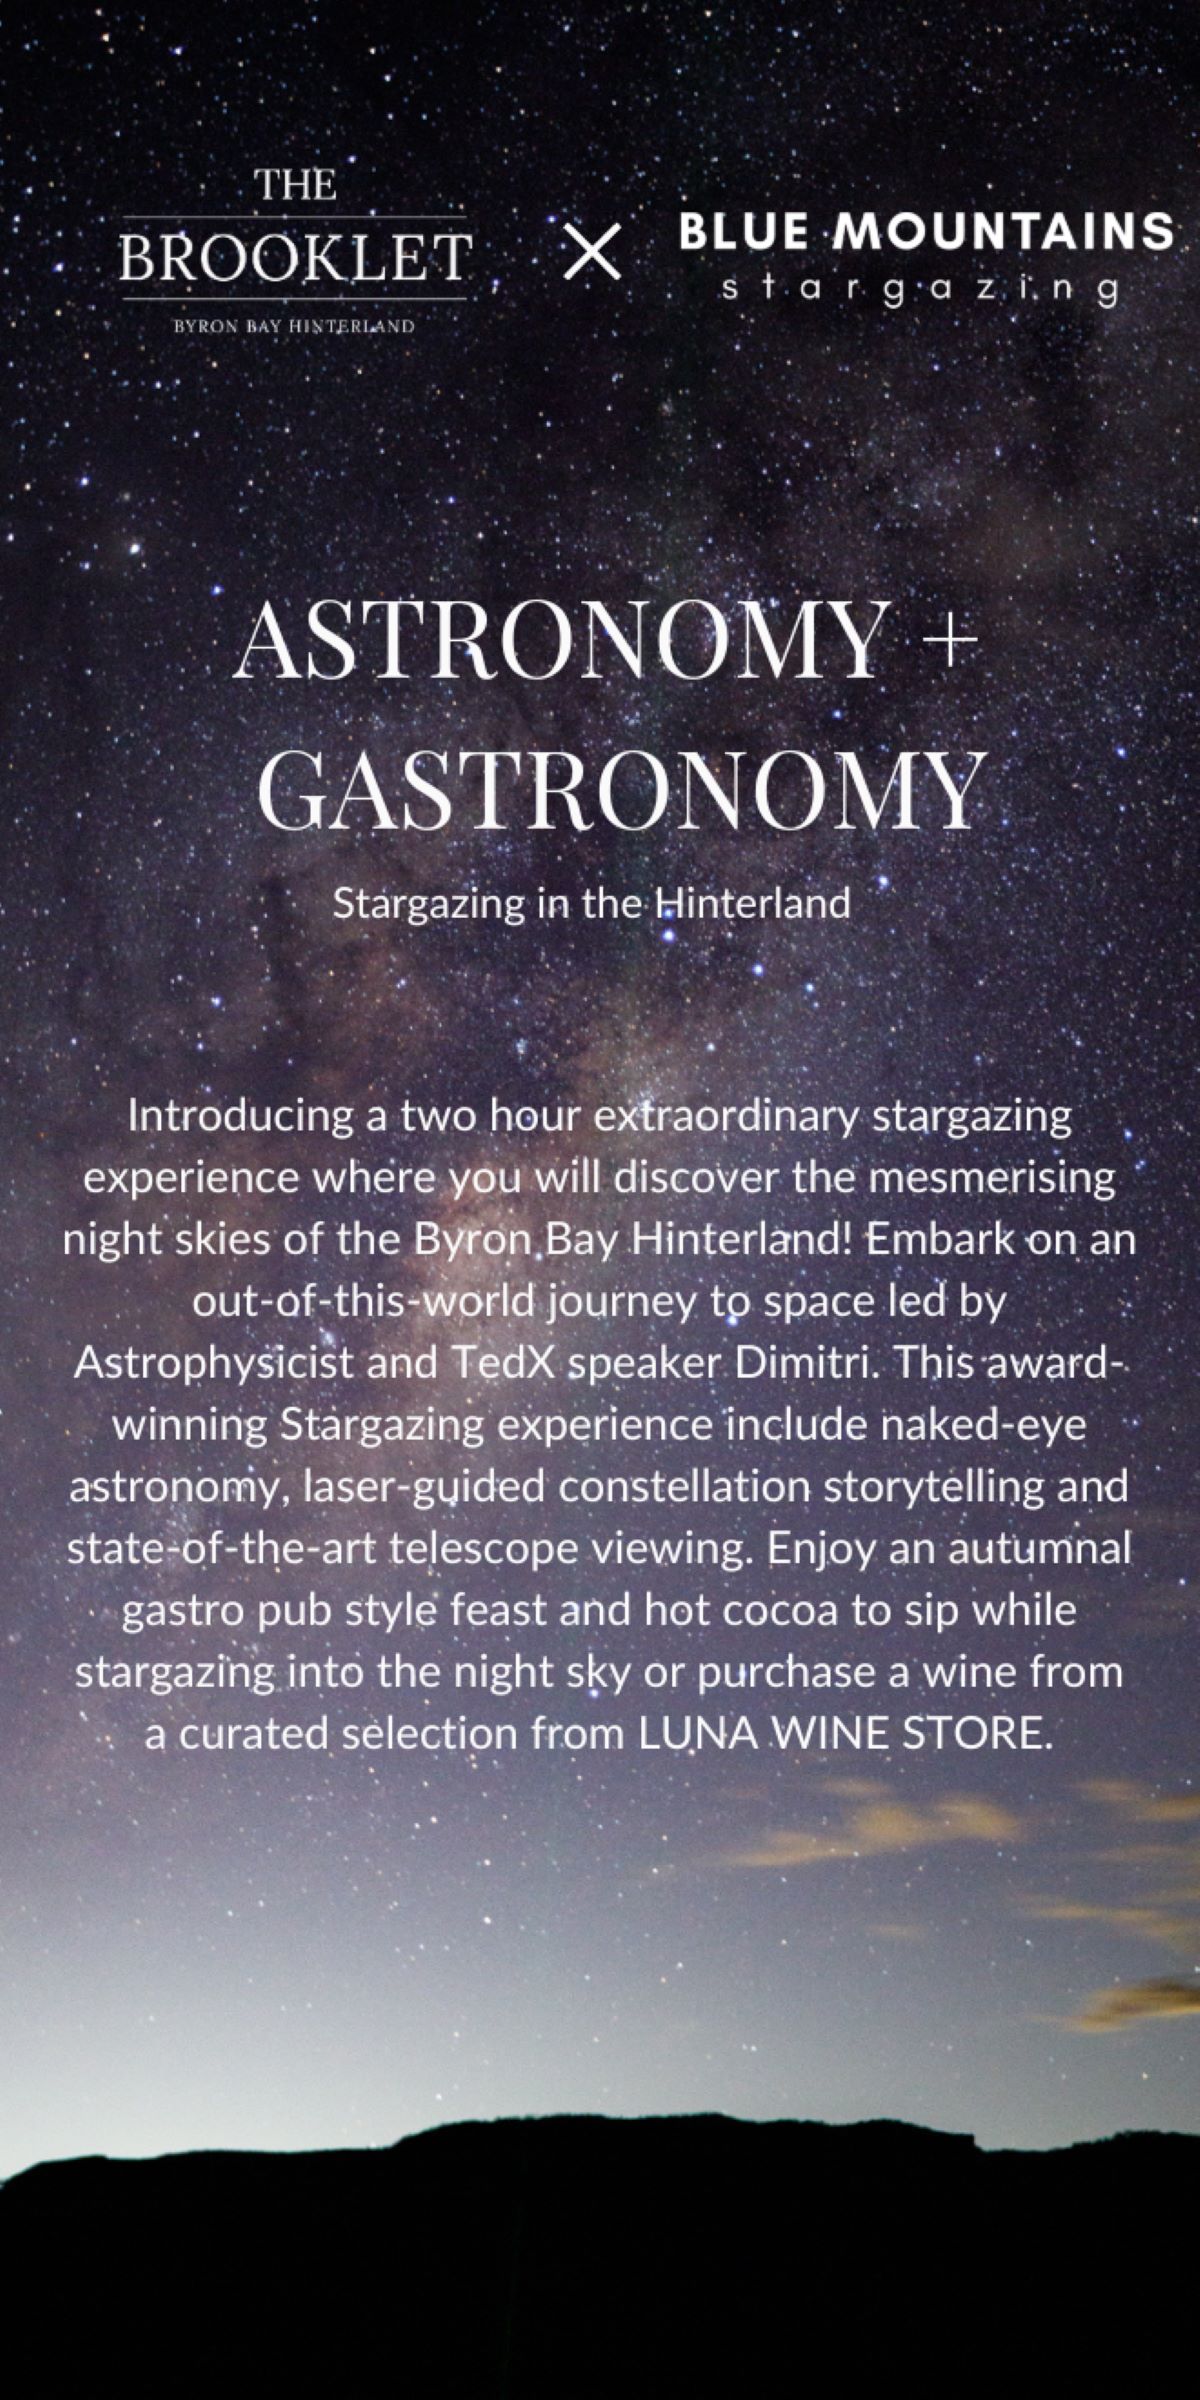 ASTRONOMY GASTRONOMY